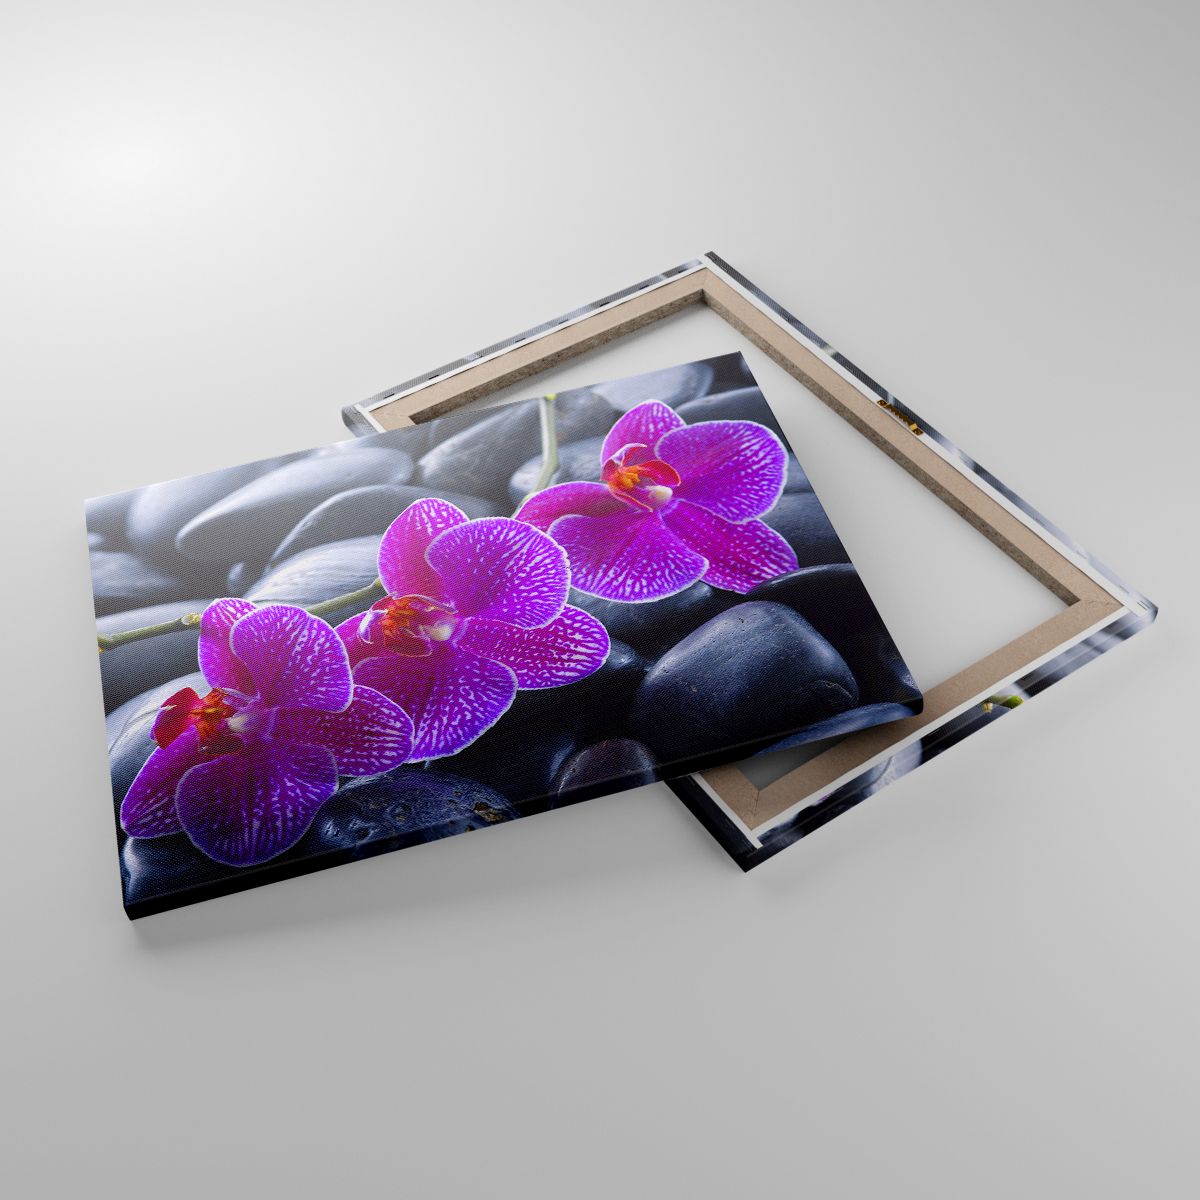 Leinwandbild Blumen, Leinwandbild Steine, Leinwandbild Orchidee, Leinwandbild Orchidee, Leinwandbild Spa